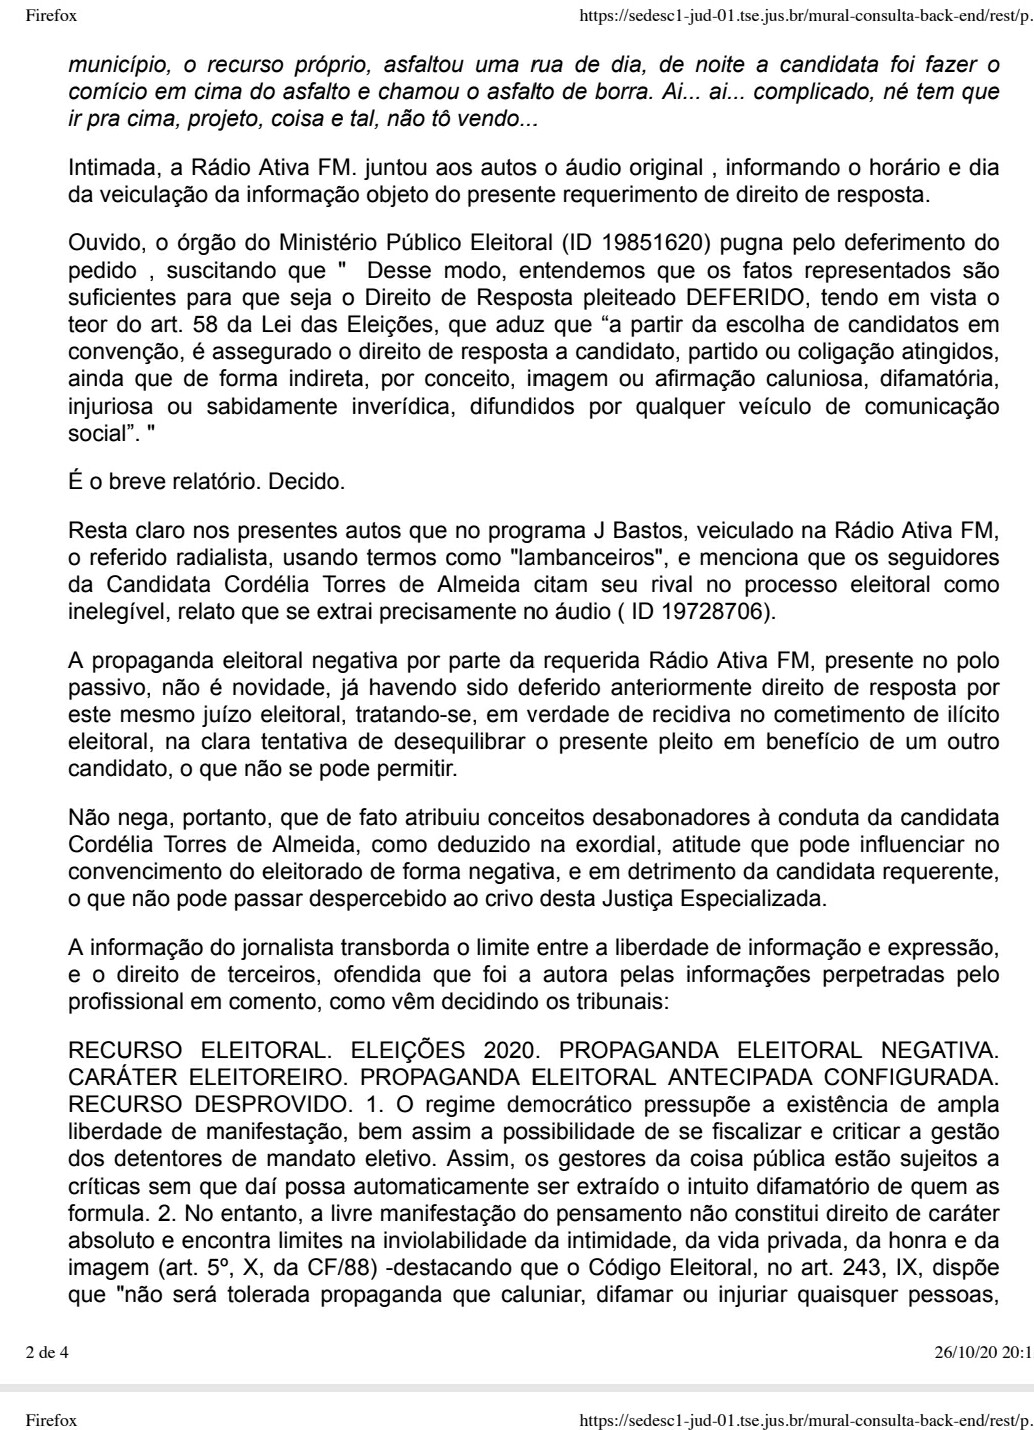 Justiça concede direito de resposta a Cordélia (DEM) no programa J. Bastos Repórter 7